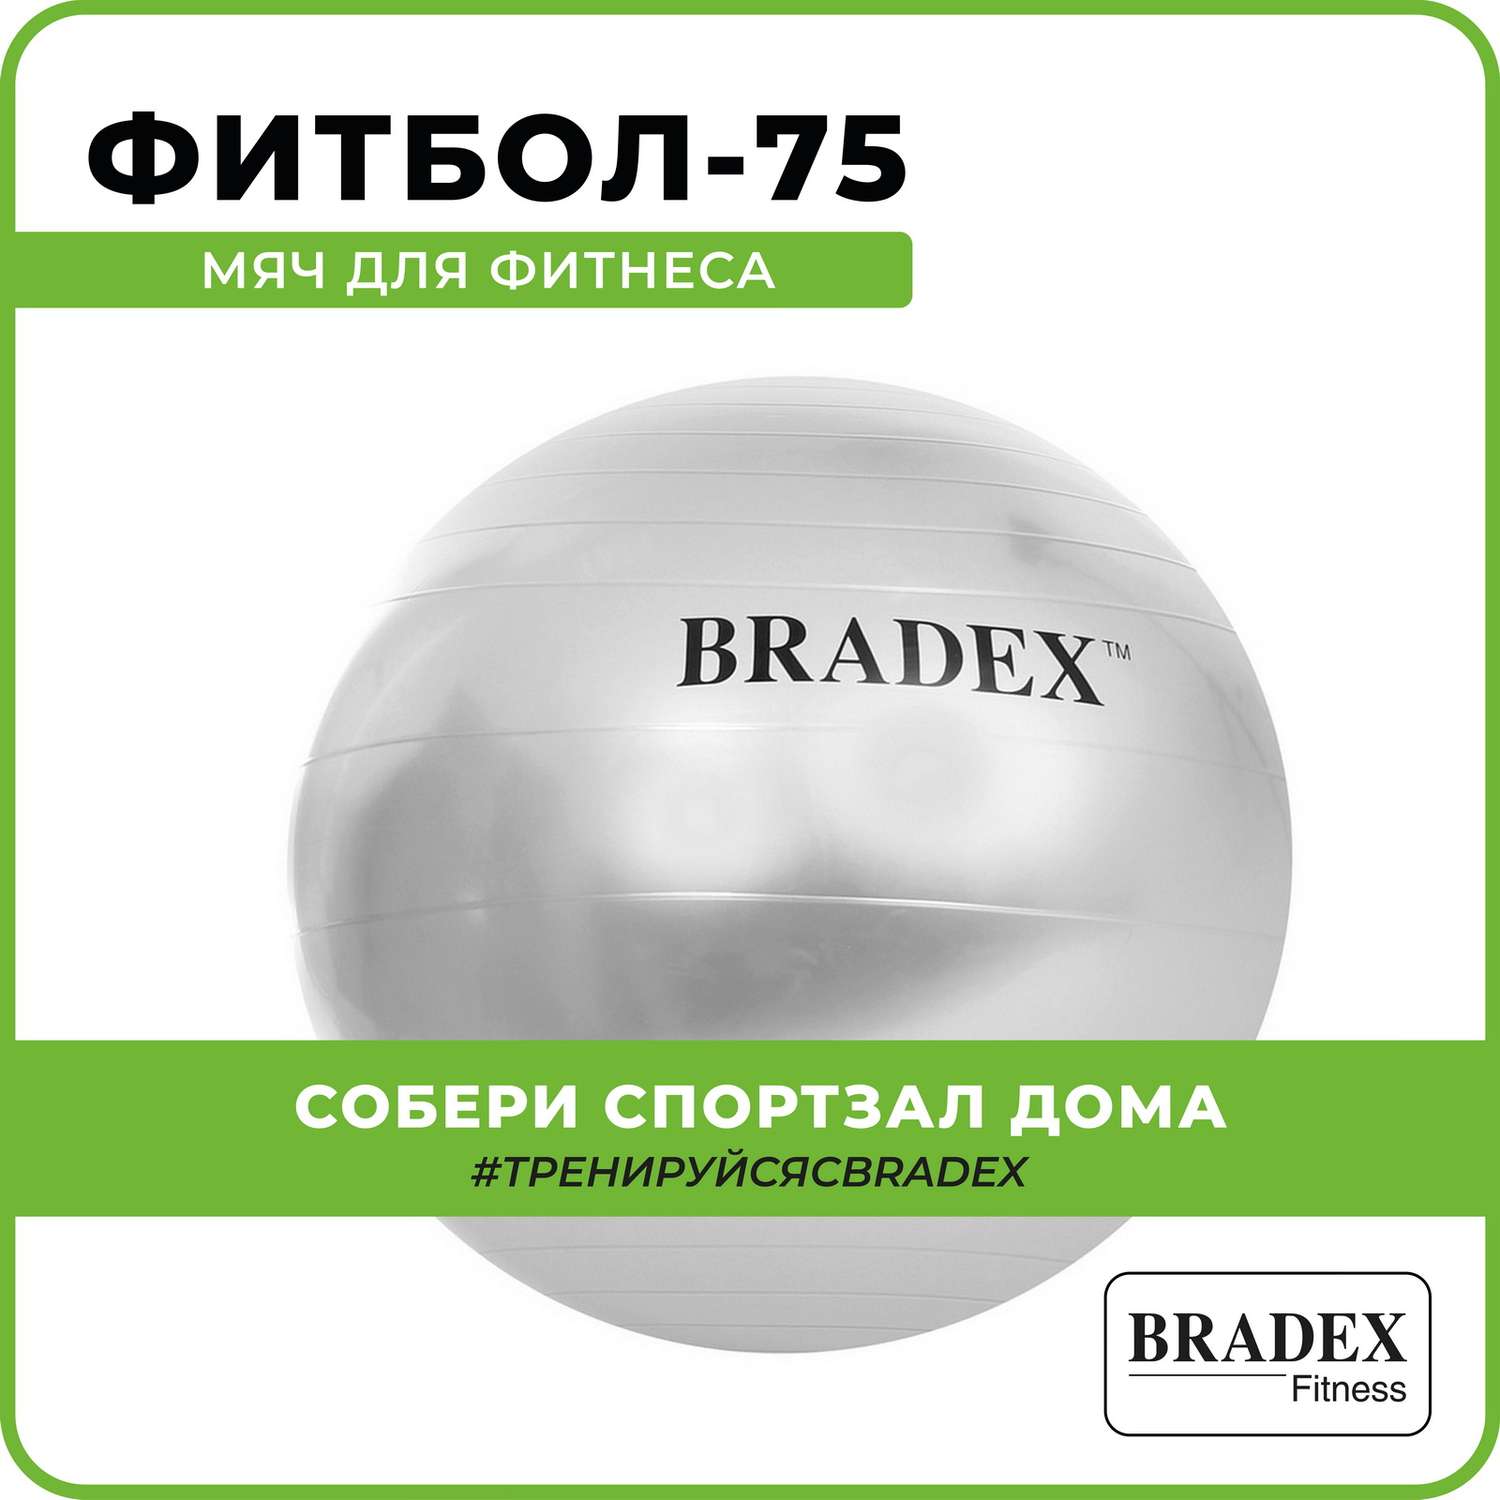 Фитбол мяч гимнастический Bradex для спорта и фитнеса 75 см - фото 1